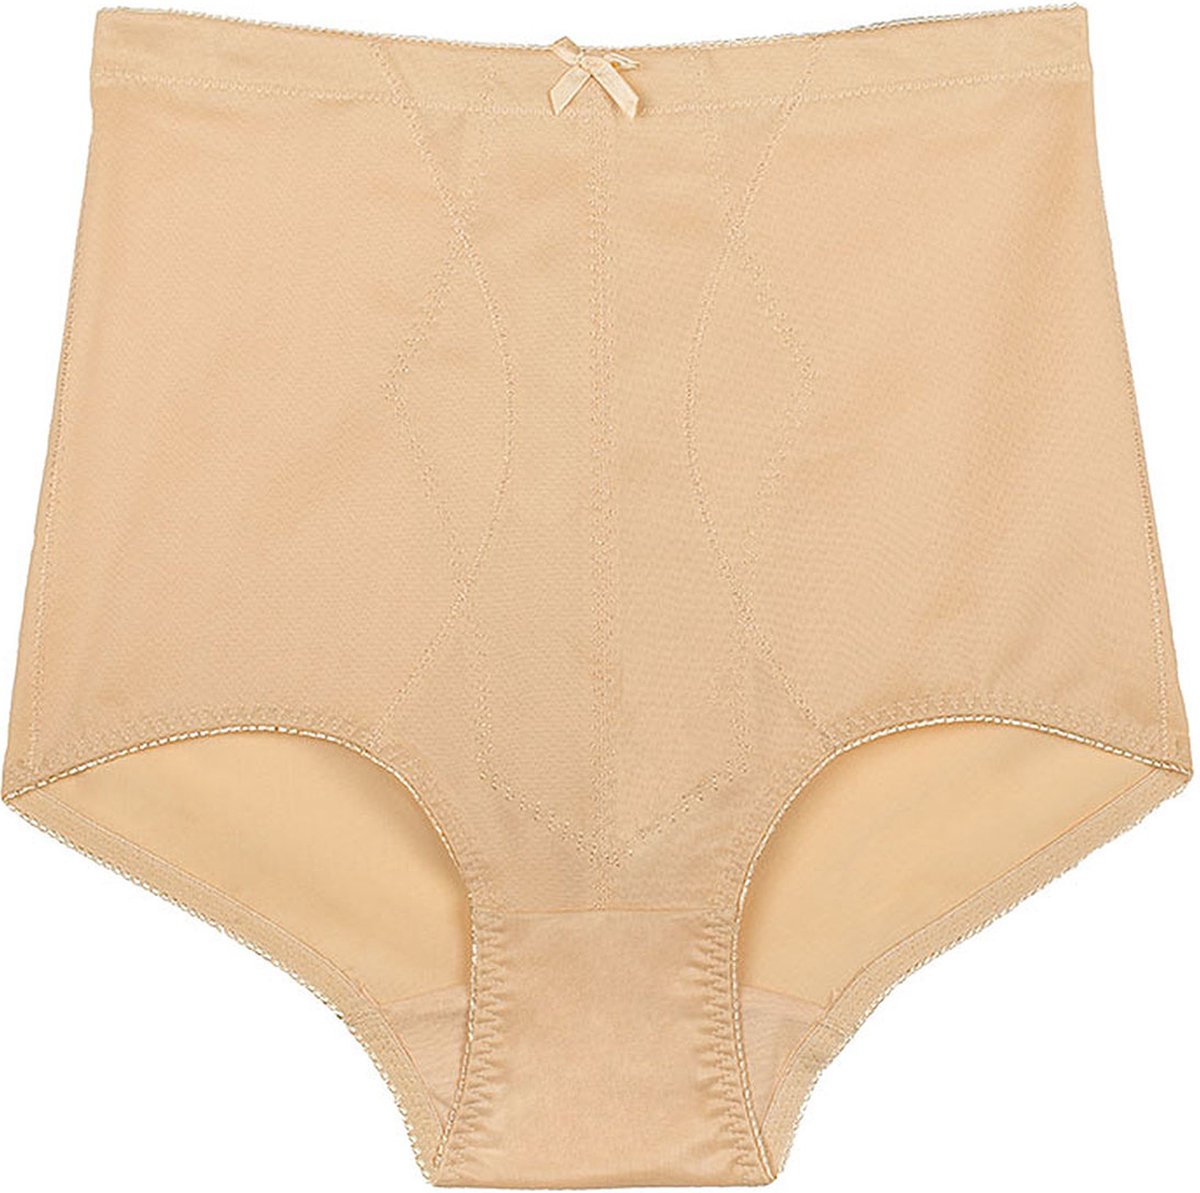 Sassa dames panty broek / step in - 40 - beige